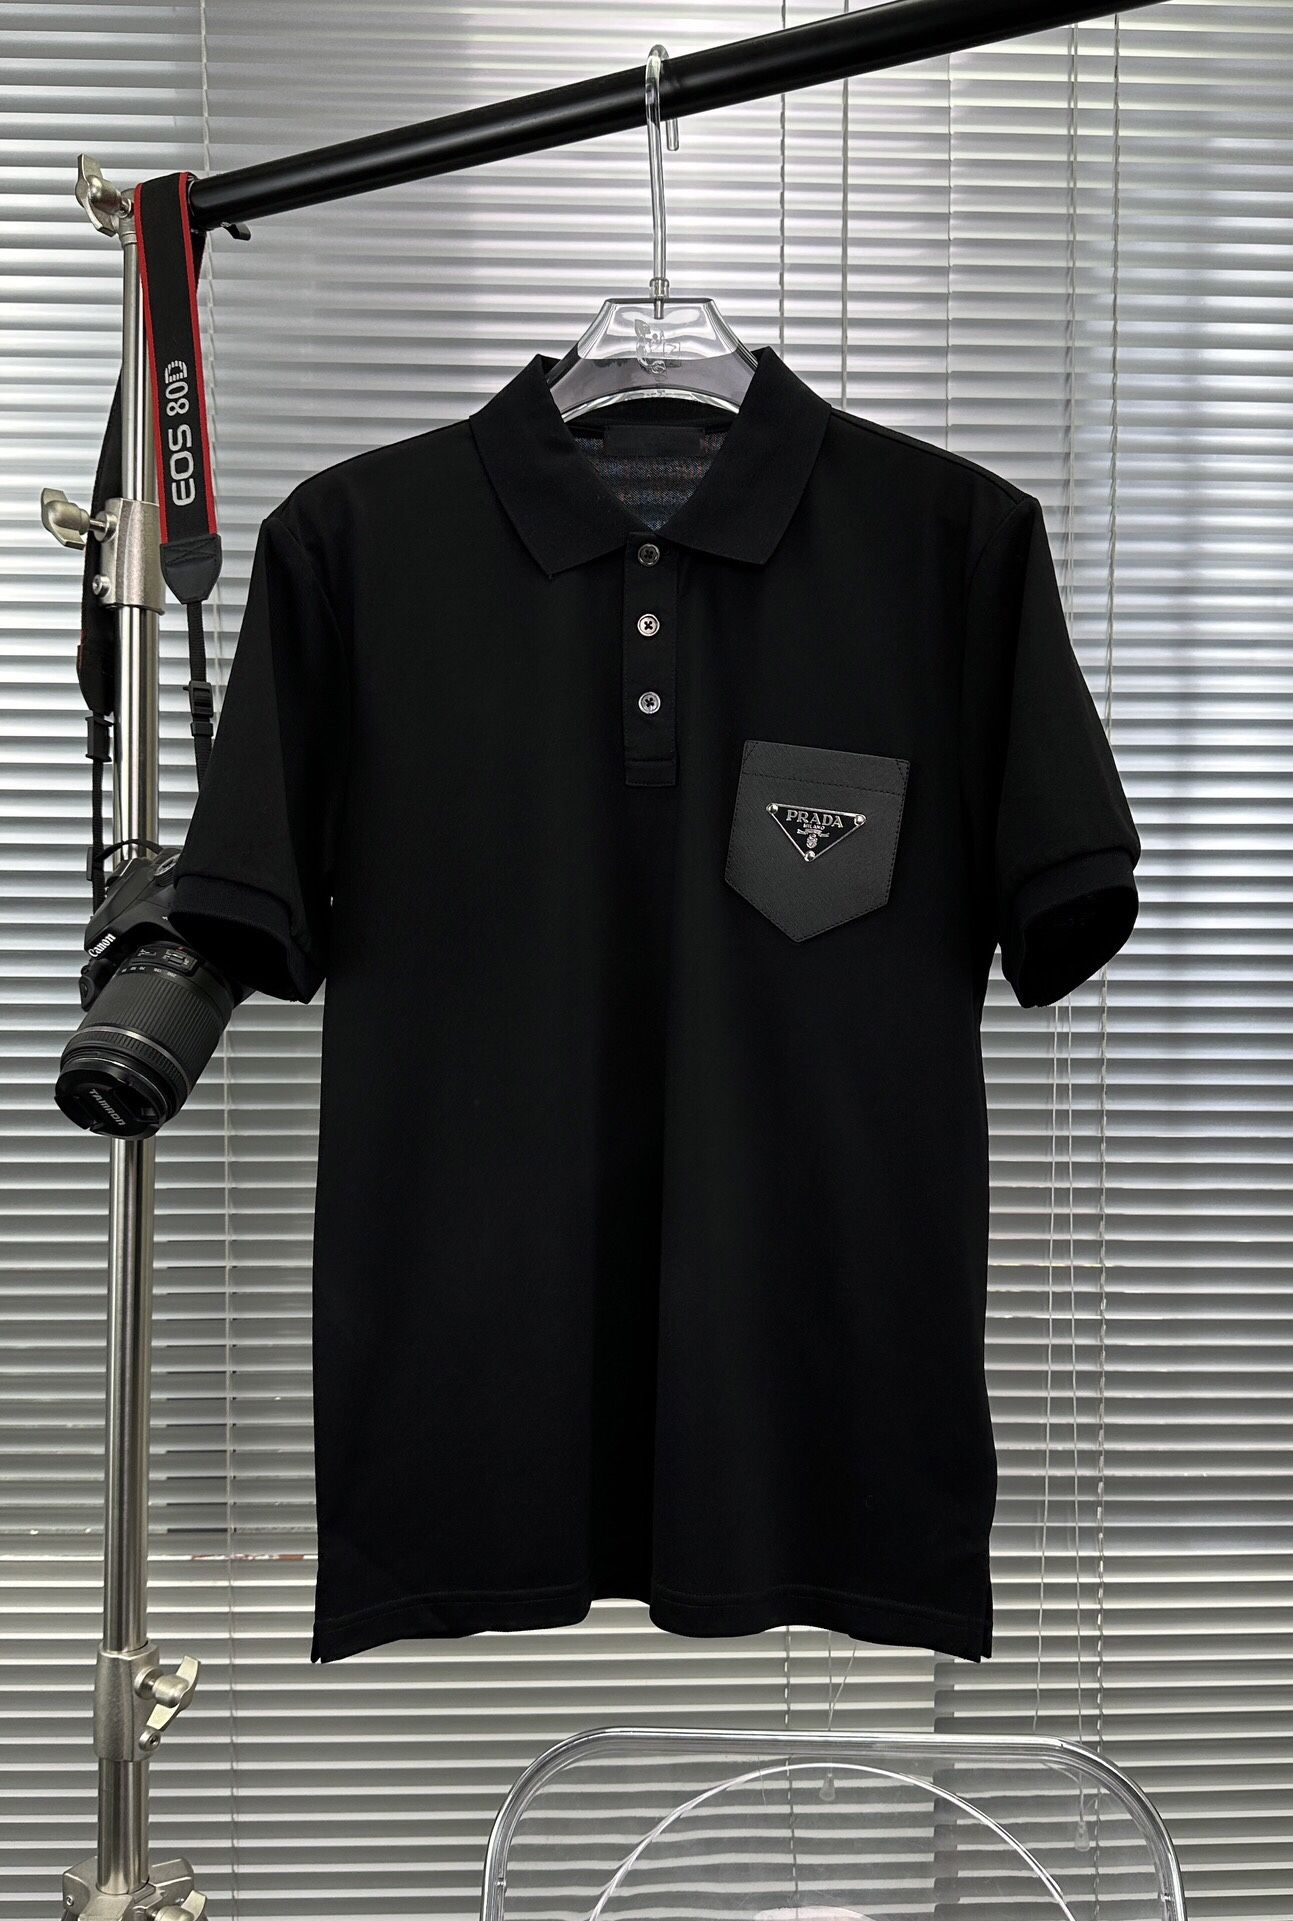 Prad@ Black Polo Shirt New 